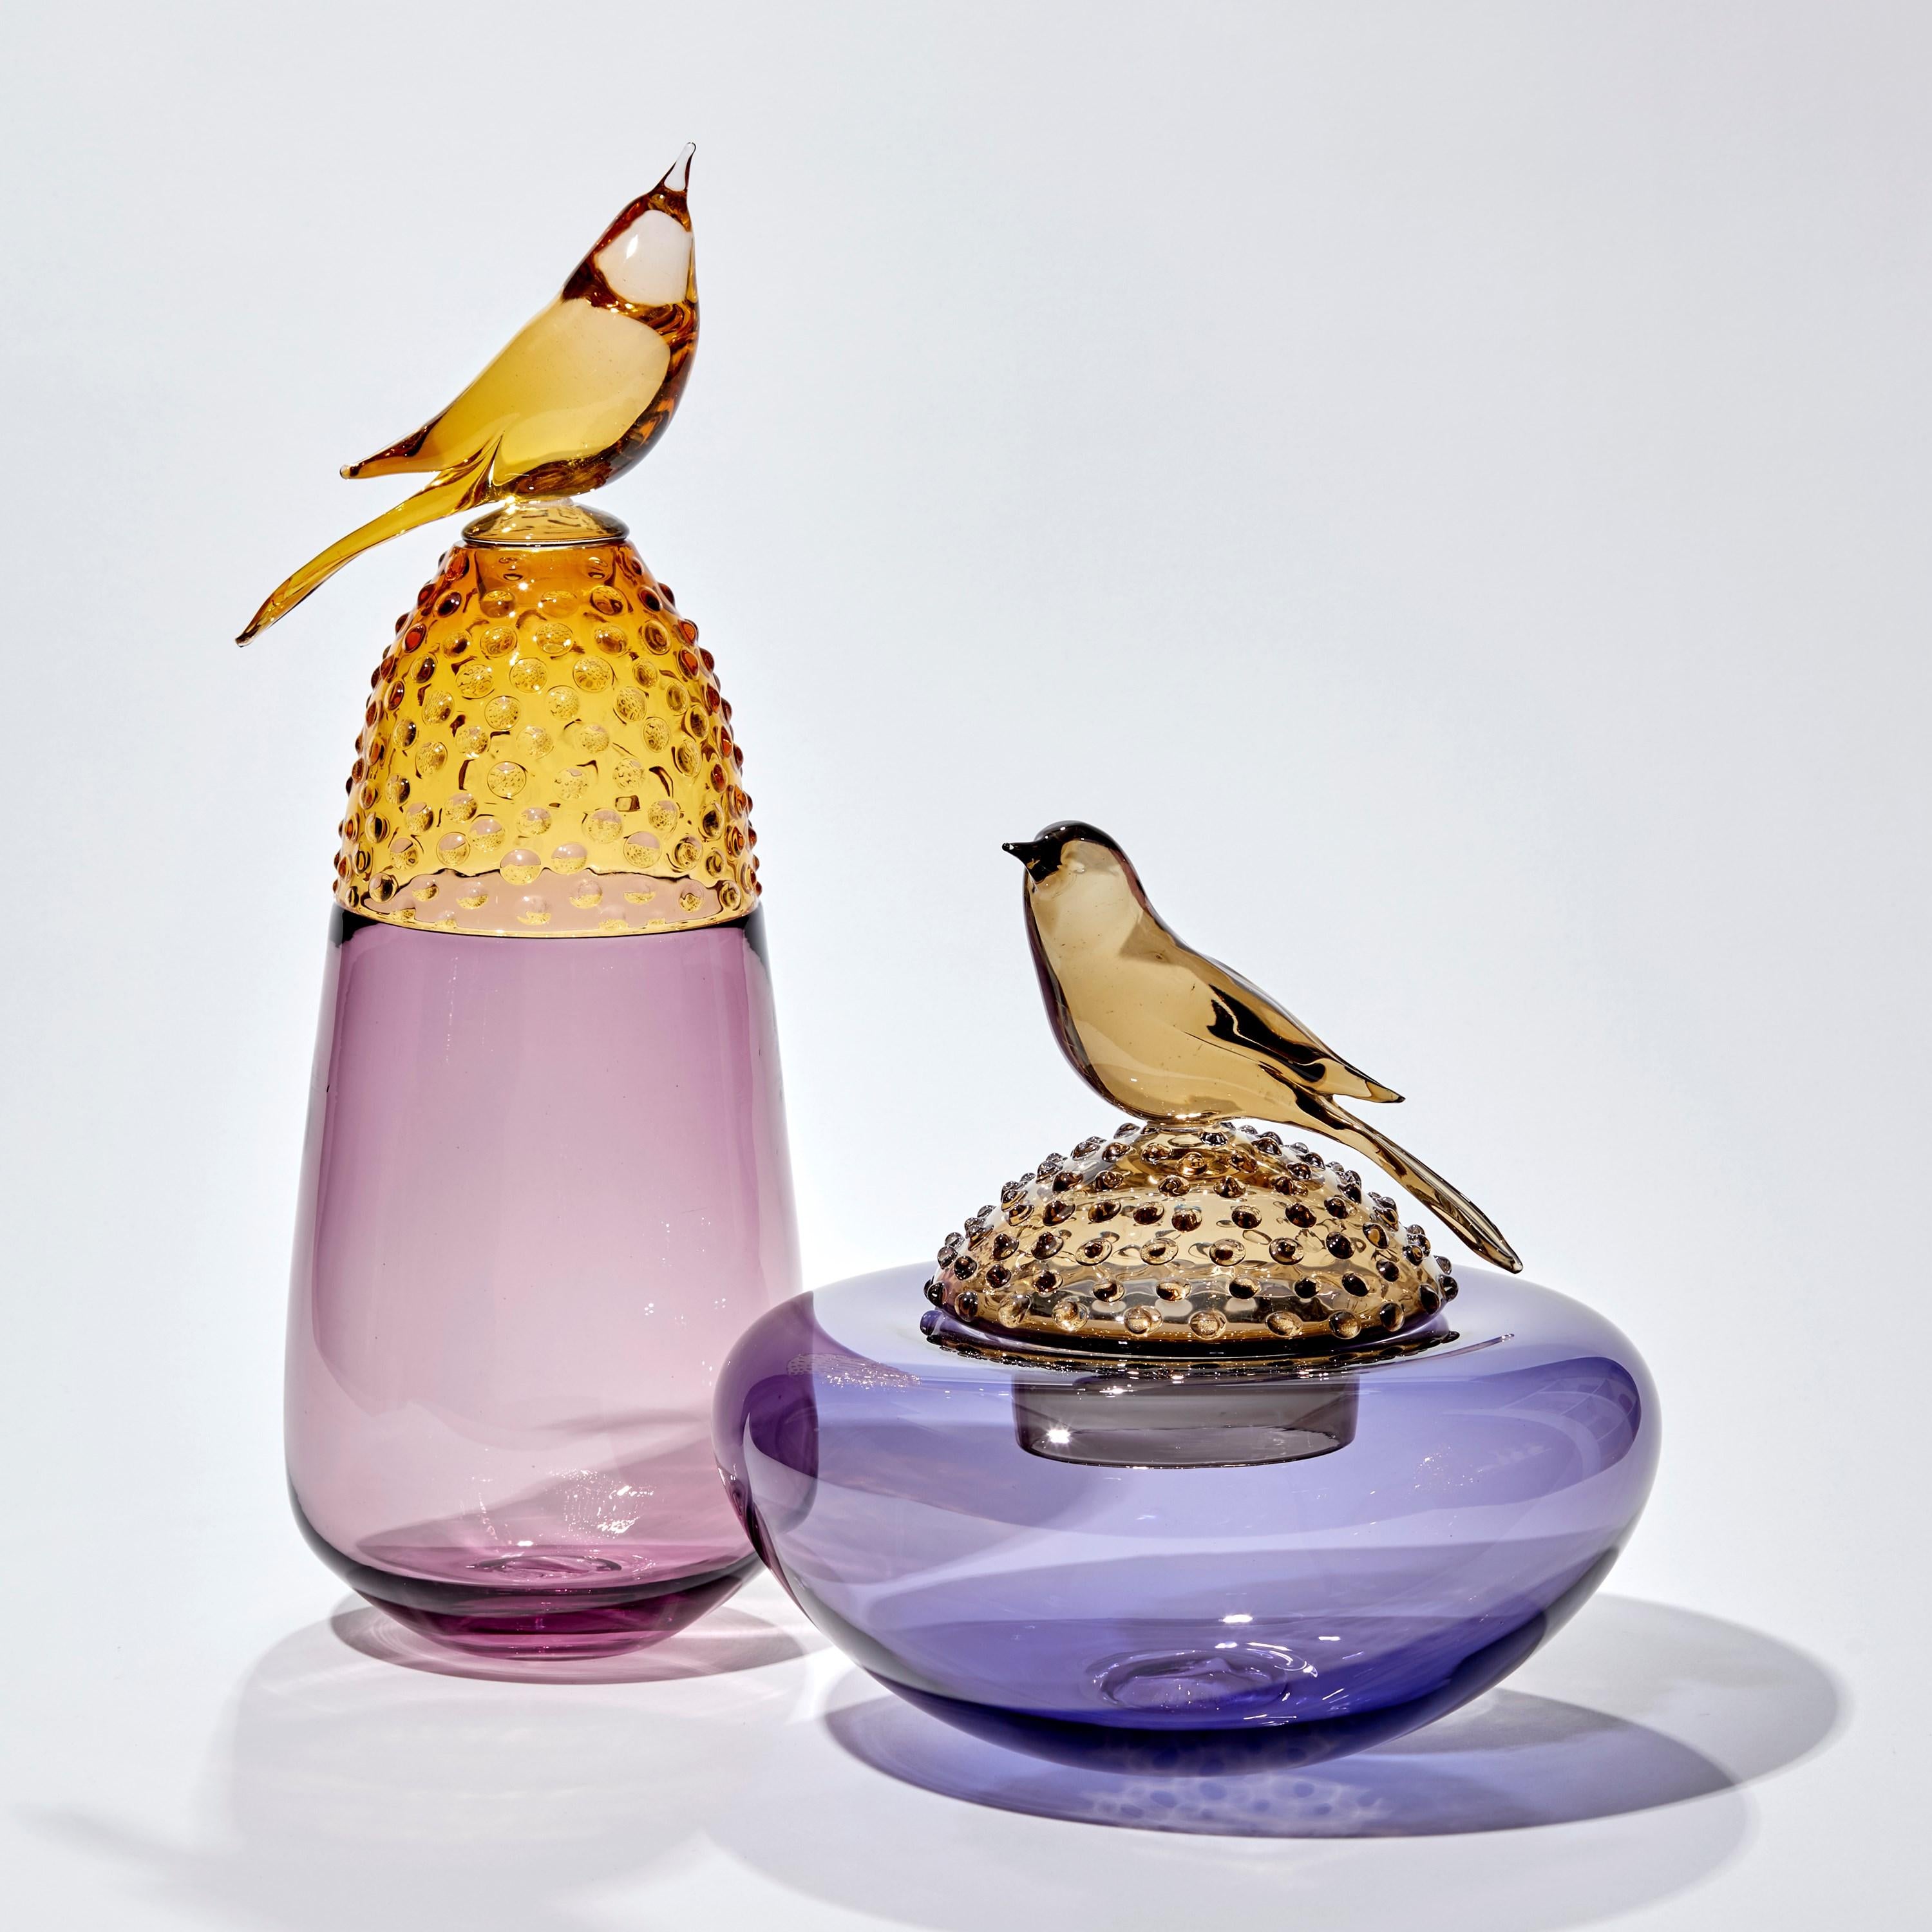 Organic Modern All about Birds XIII, a Blue & Amber Glass Sculpture with Bird by Julie Johnson